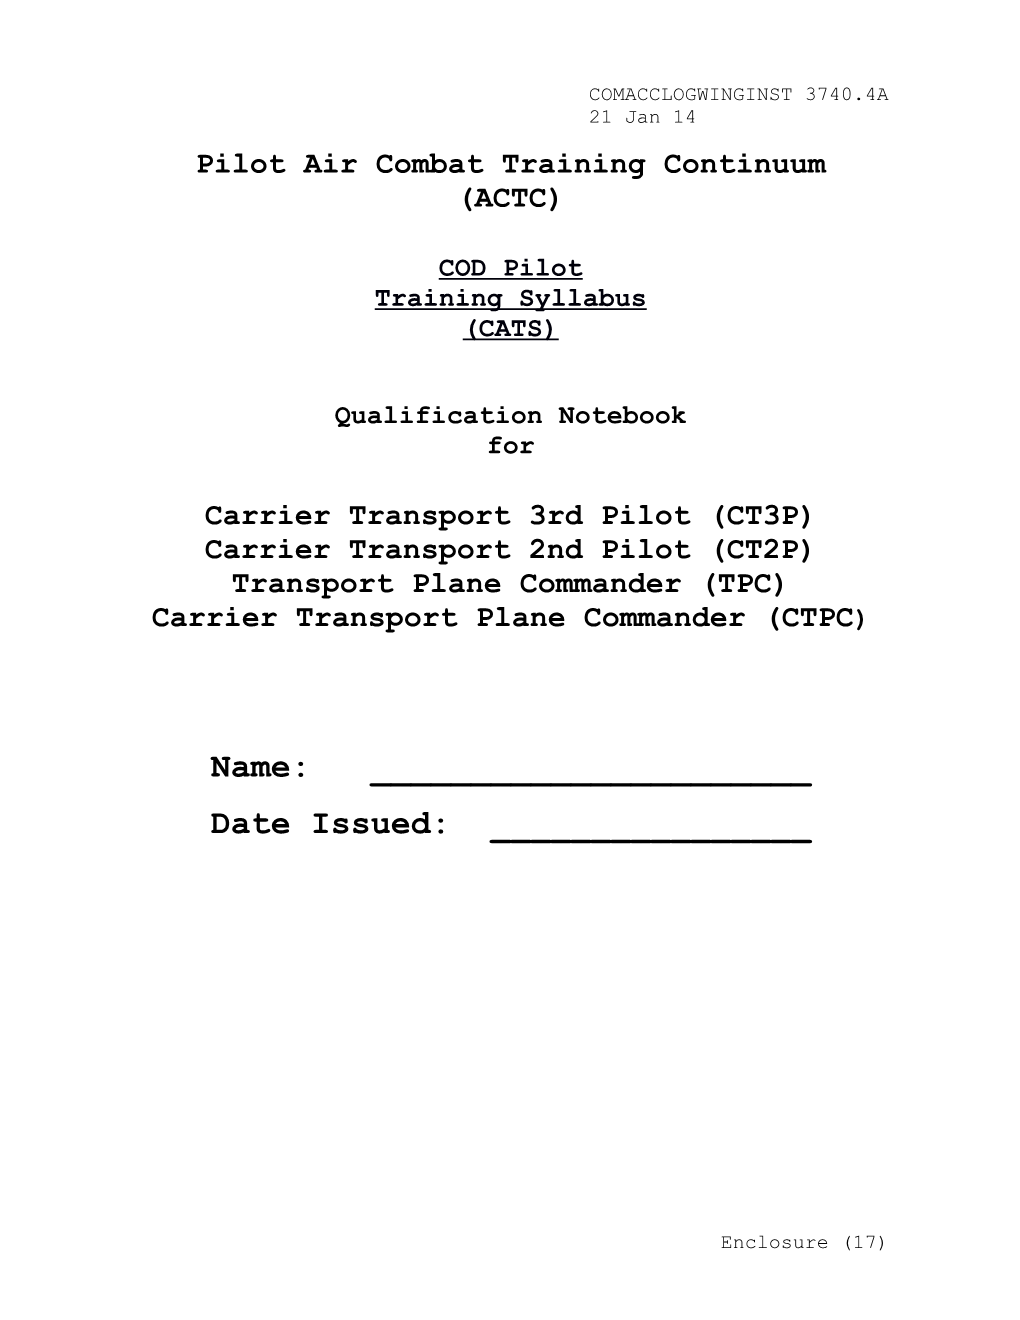 Pilot Air Combat Training Continuum